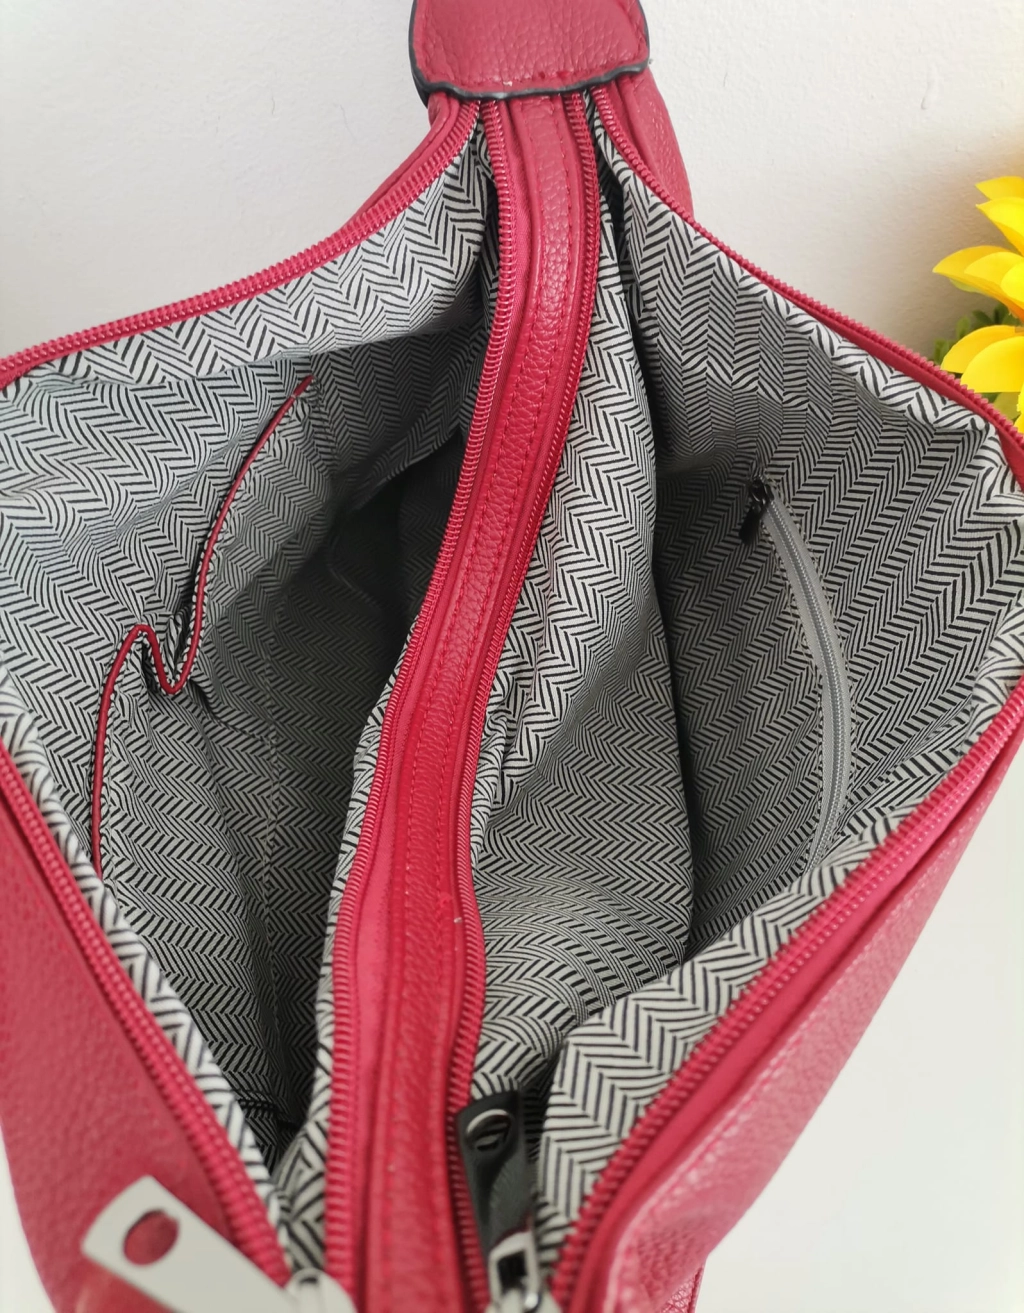 Άνετη δερμάτινη τσάντα με δύο διαμερίσματα με ξεχωριστά φερμουάρ και εξωτερική τσέπη